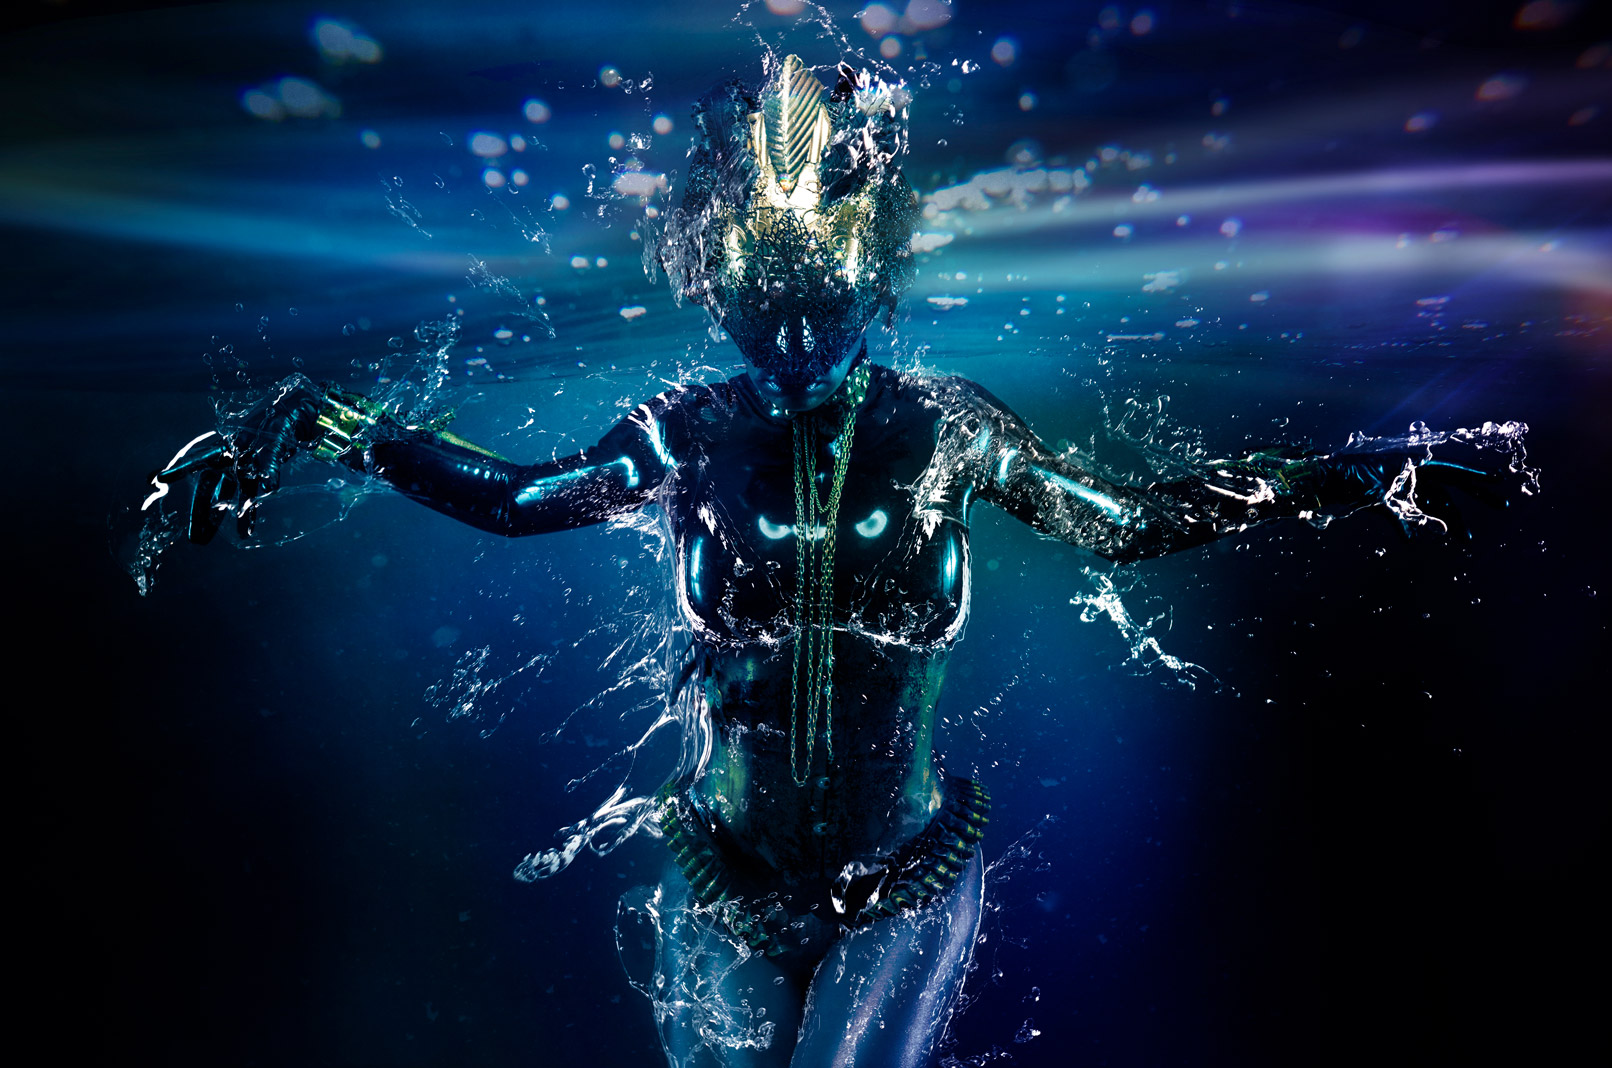 Alienartige Frau unter Wasser. Dem Bild wurden Texturen mit Wassertropfen und Wasserspritzern hinzugefügt.